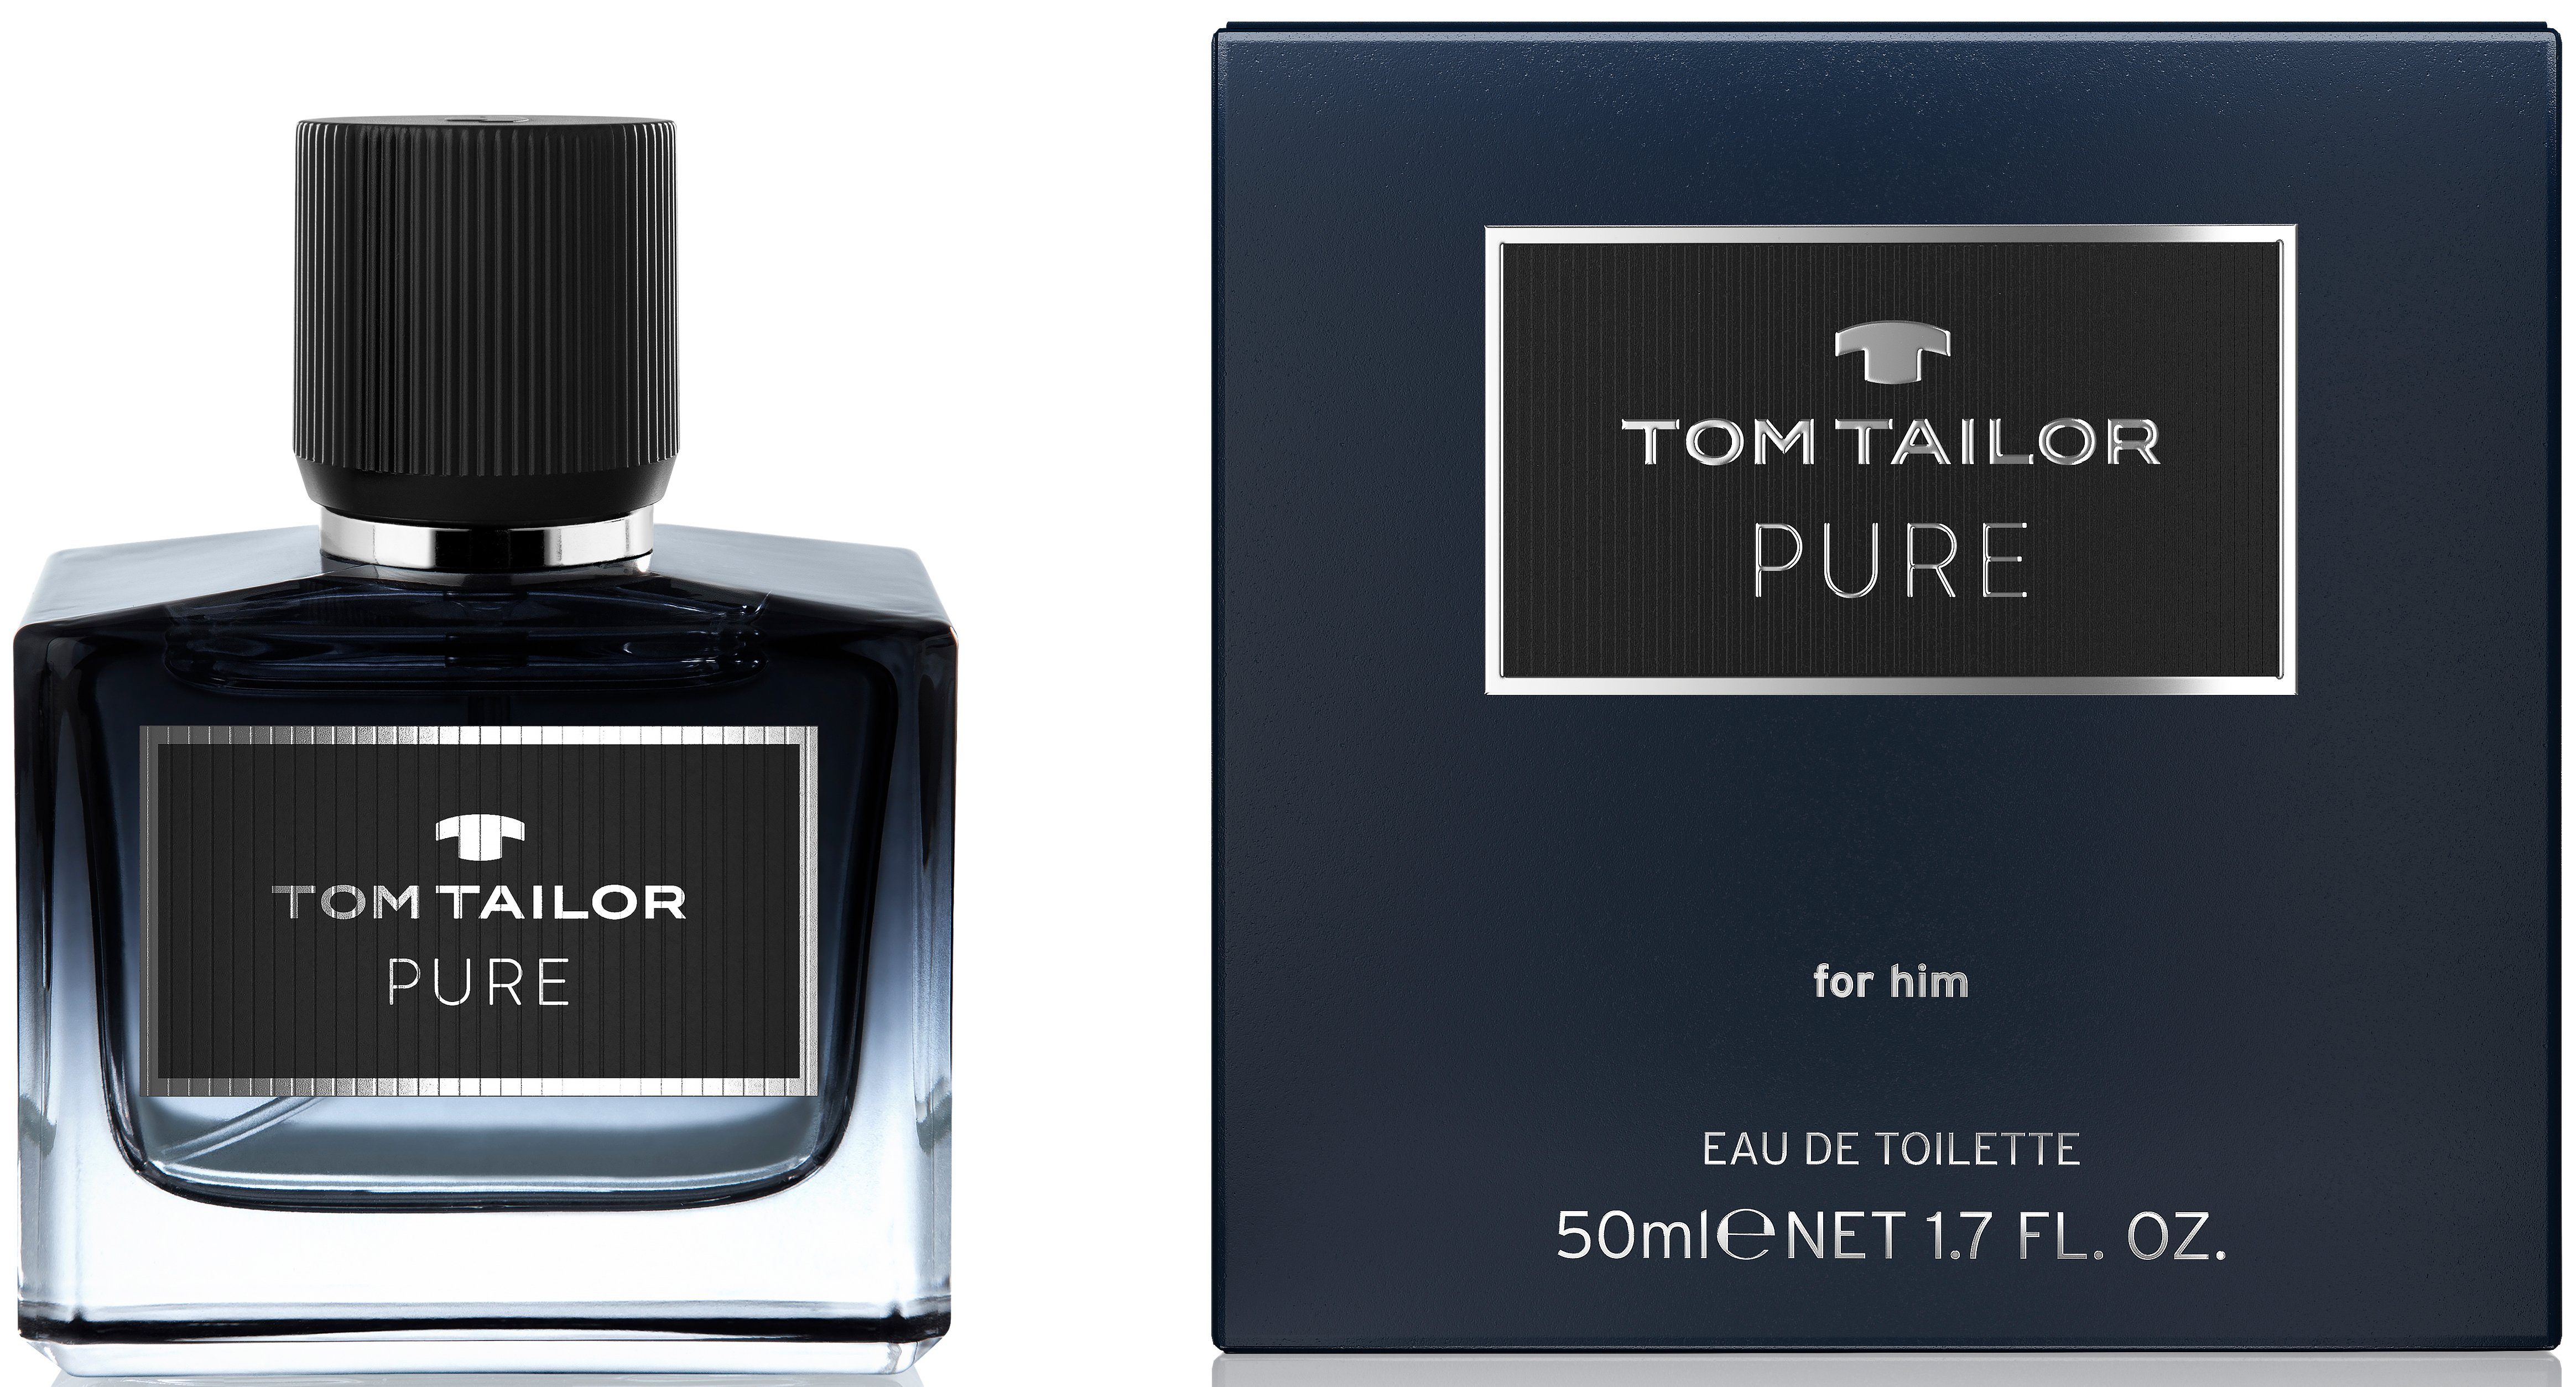 TOM TAILOR Eau de Toilette Pure for him